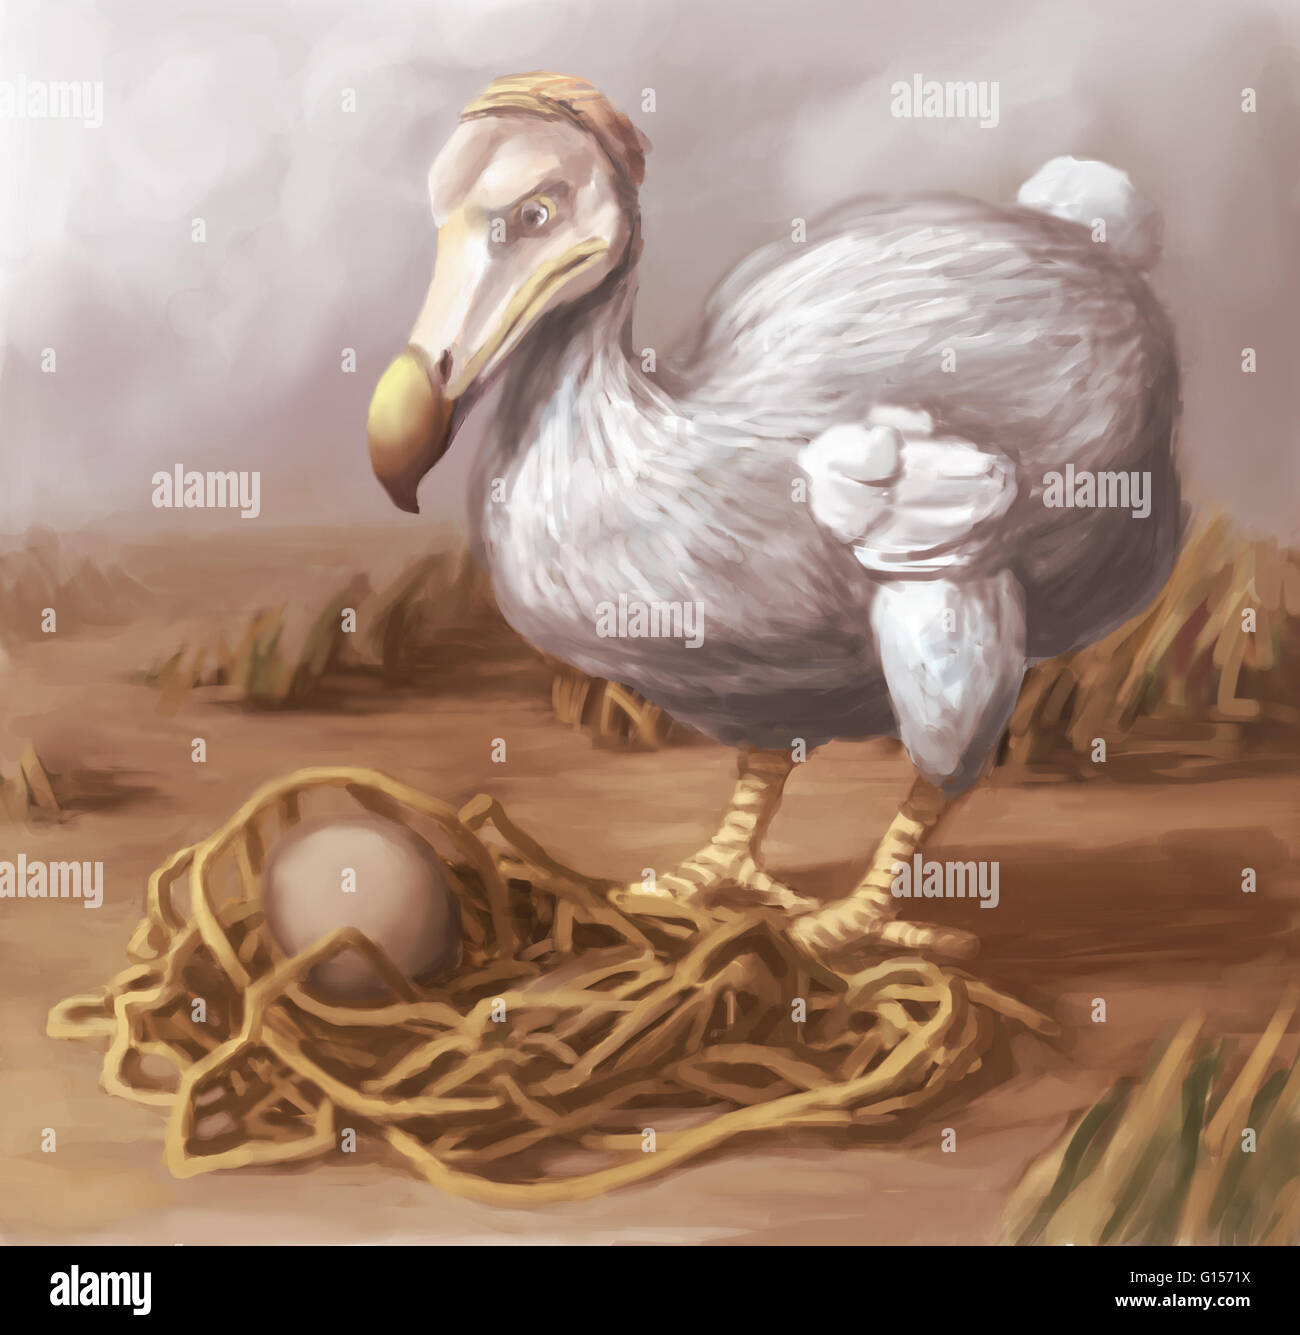 Illustrazione di un Dodo Bird (Raphus cucullatus) di protezione è uovo. Il Dodo Bird è stata estinta fin dalla metà-fine del XVII secolo. Foto Stock